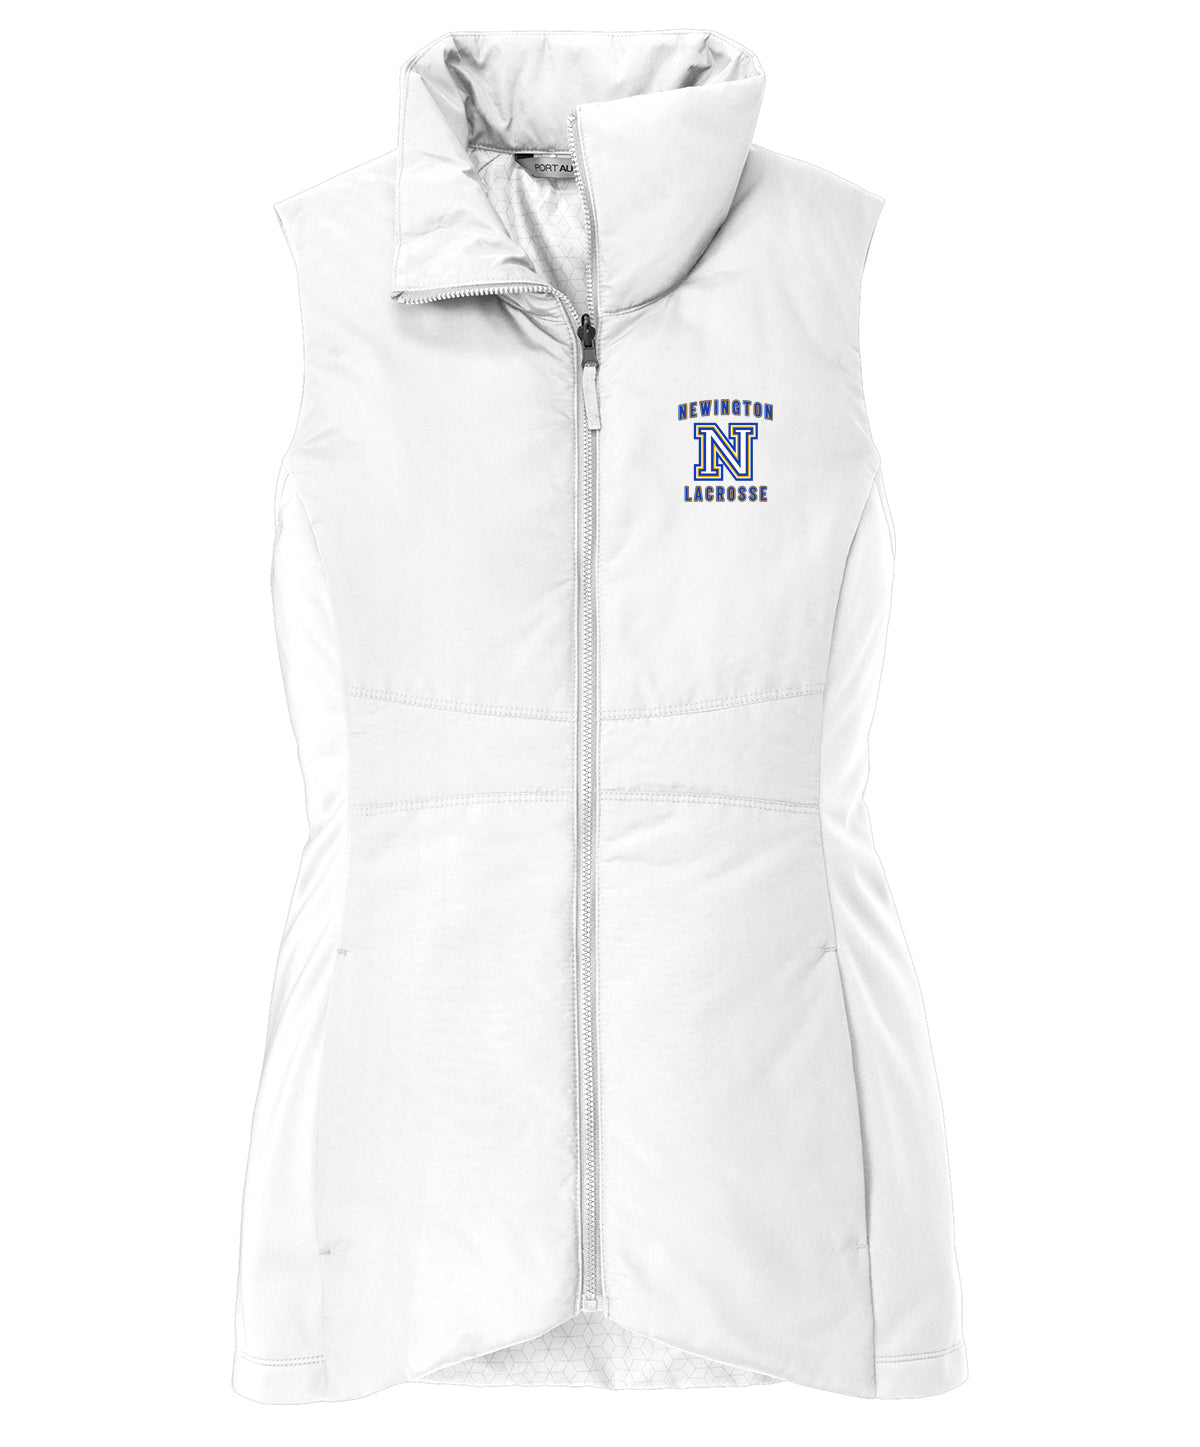 Newington Lacrosse Women's White Vest